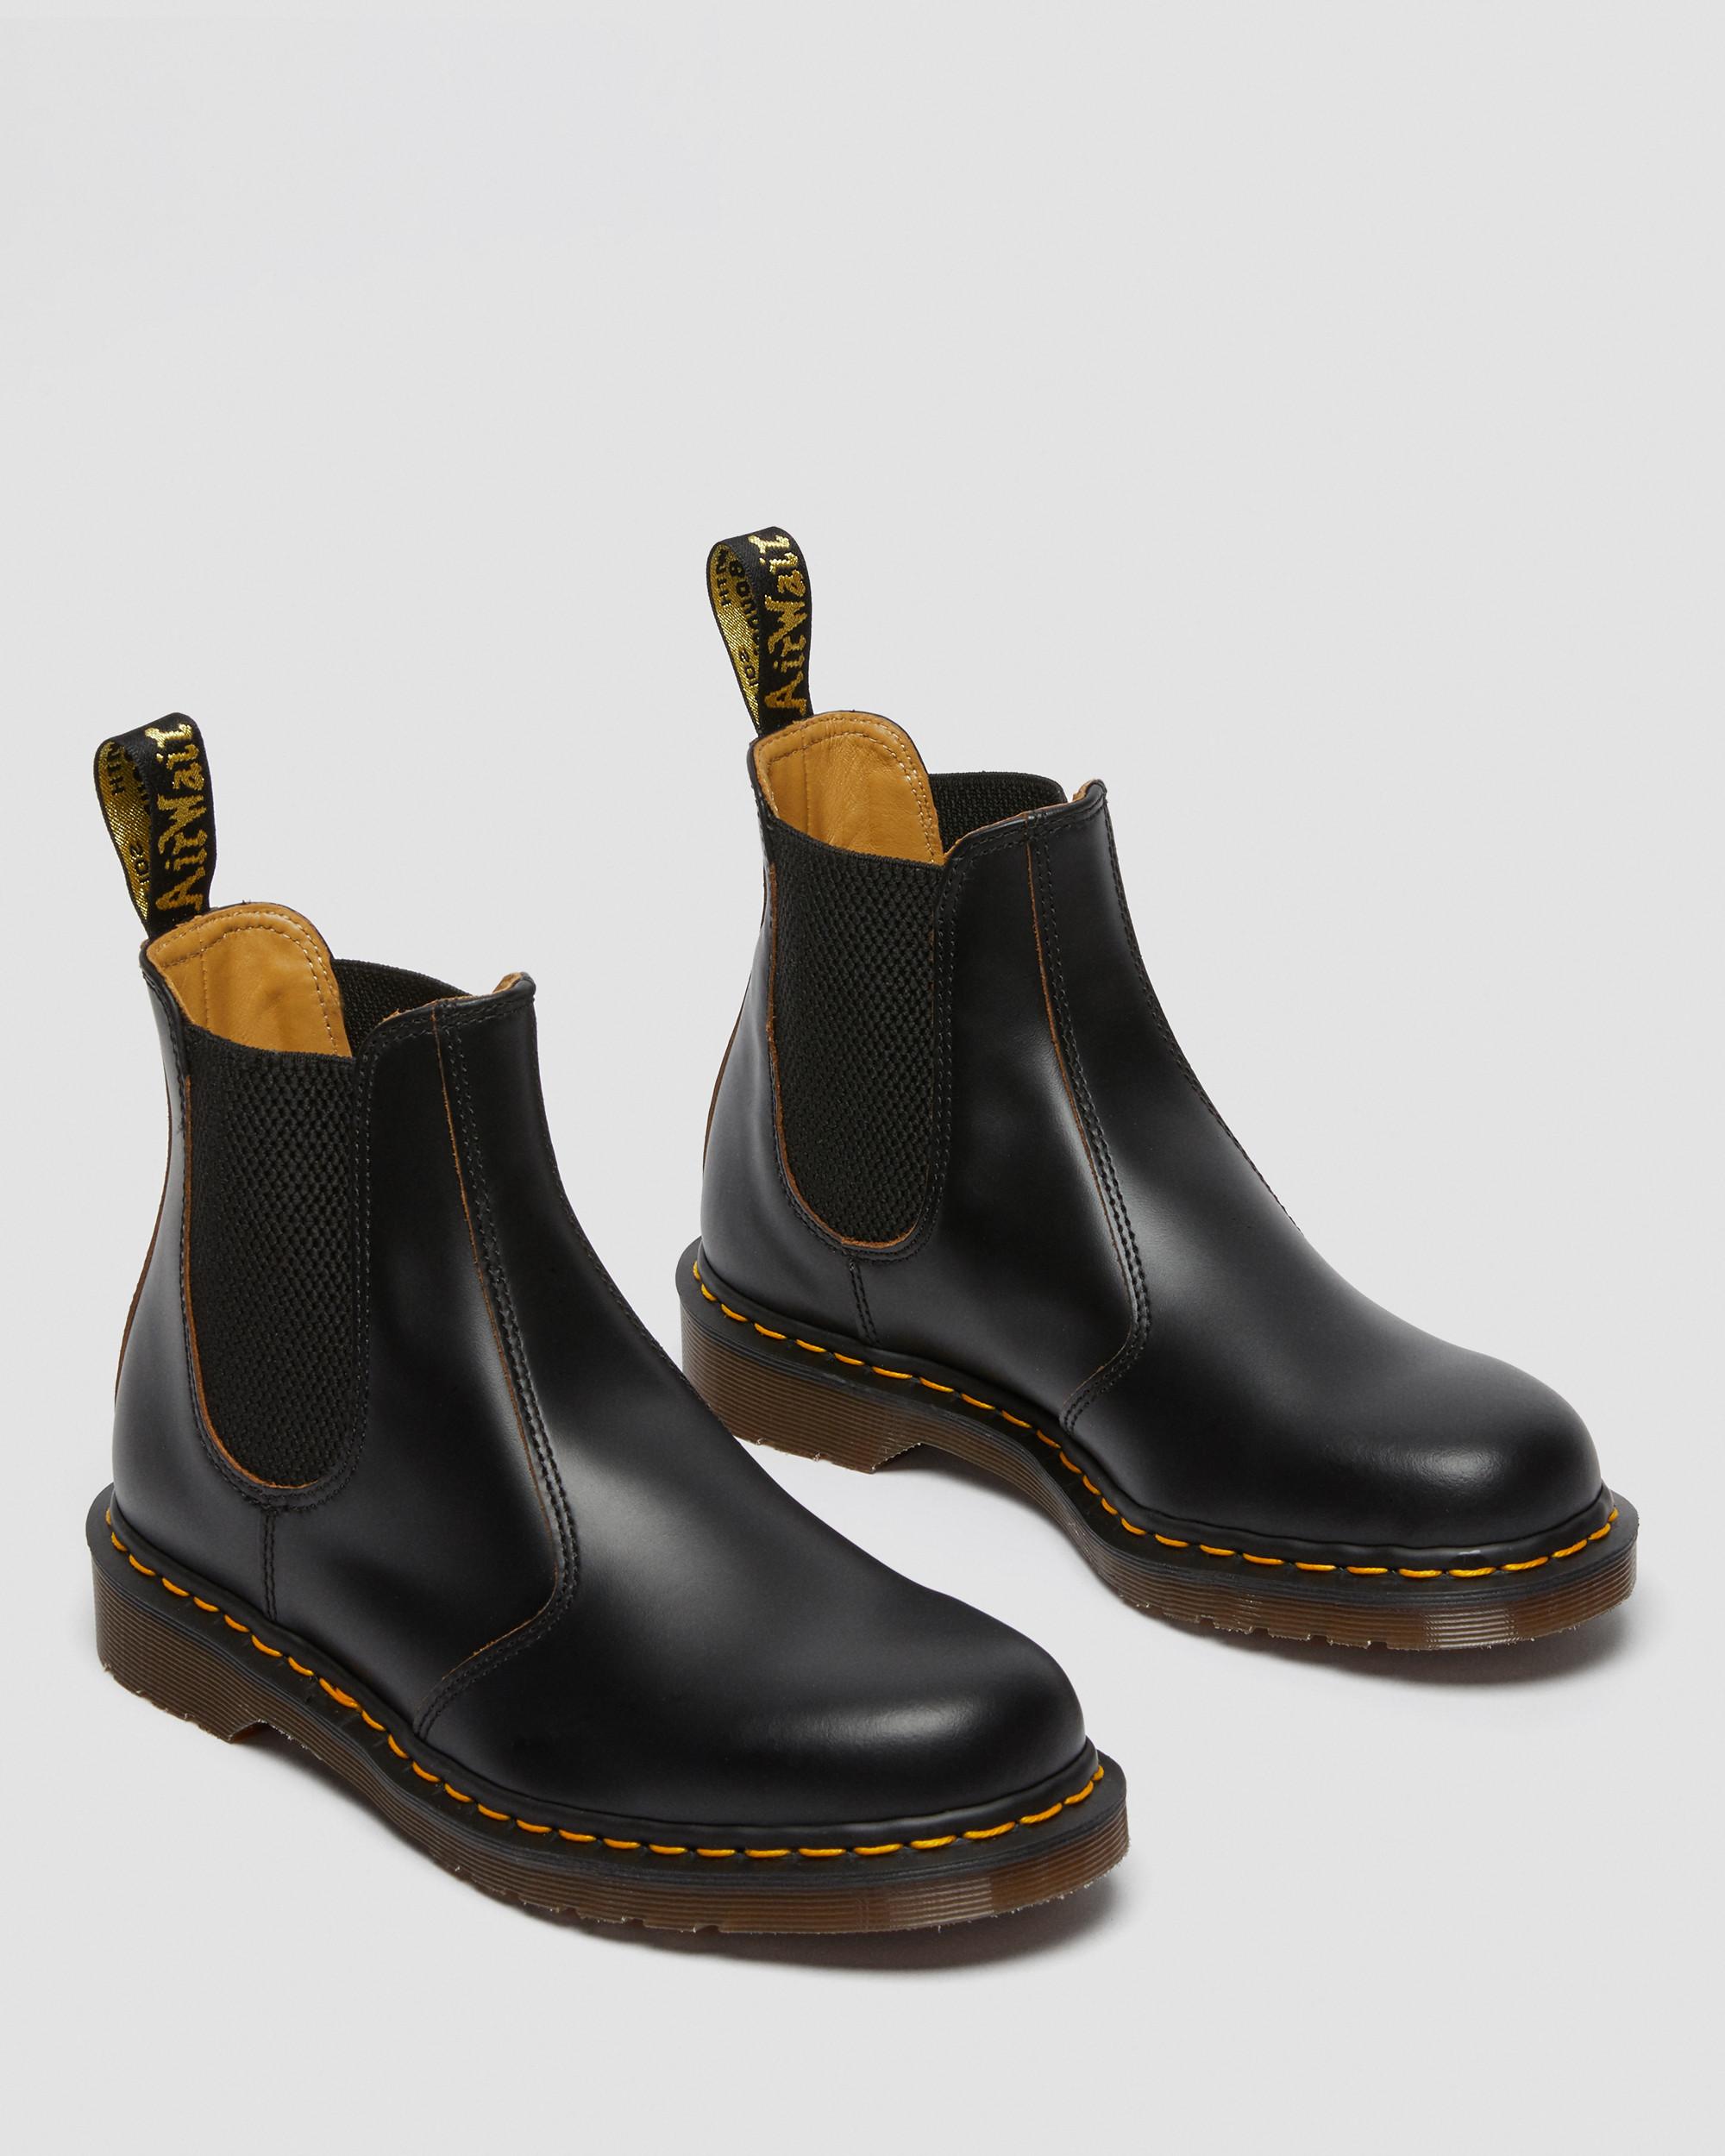 ensidigt Uegnet miste dig selv 2976 Vintage Made In England Chelsea Boots | Dr. Martens